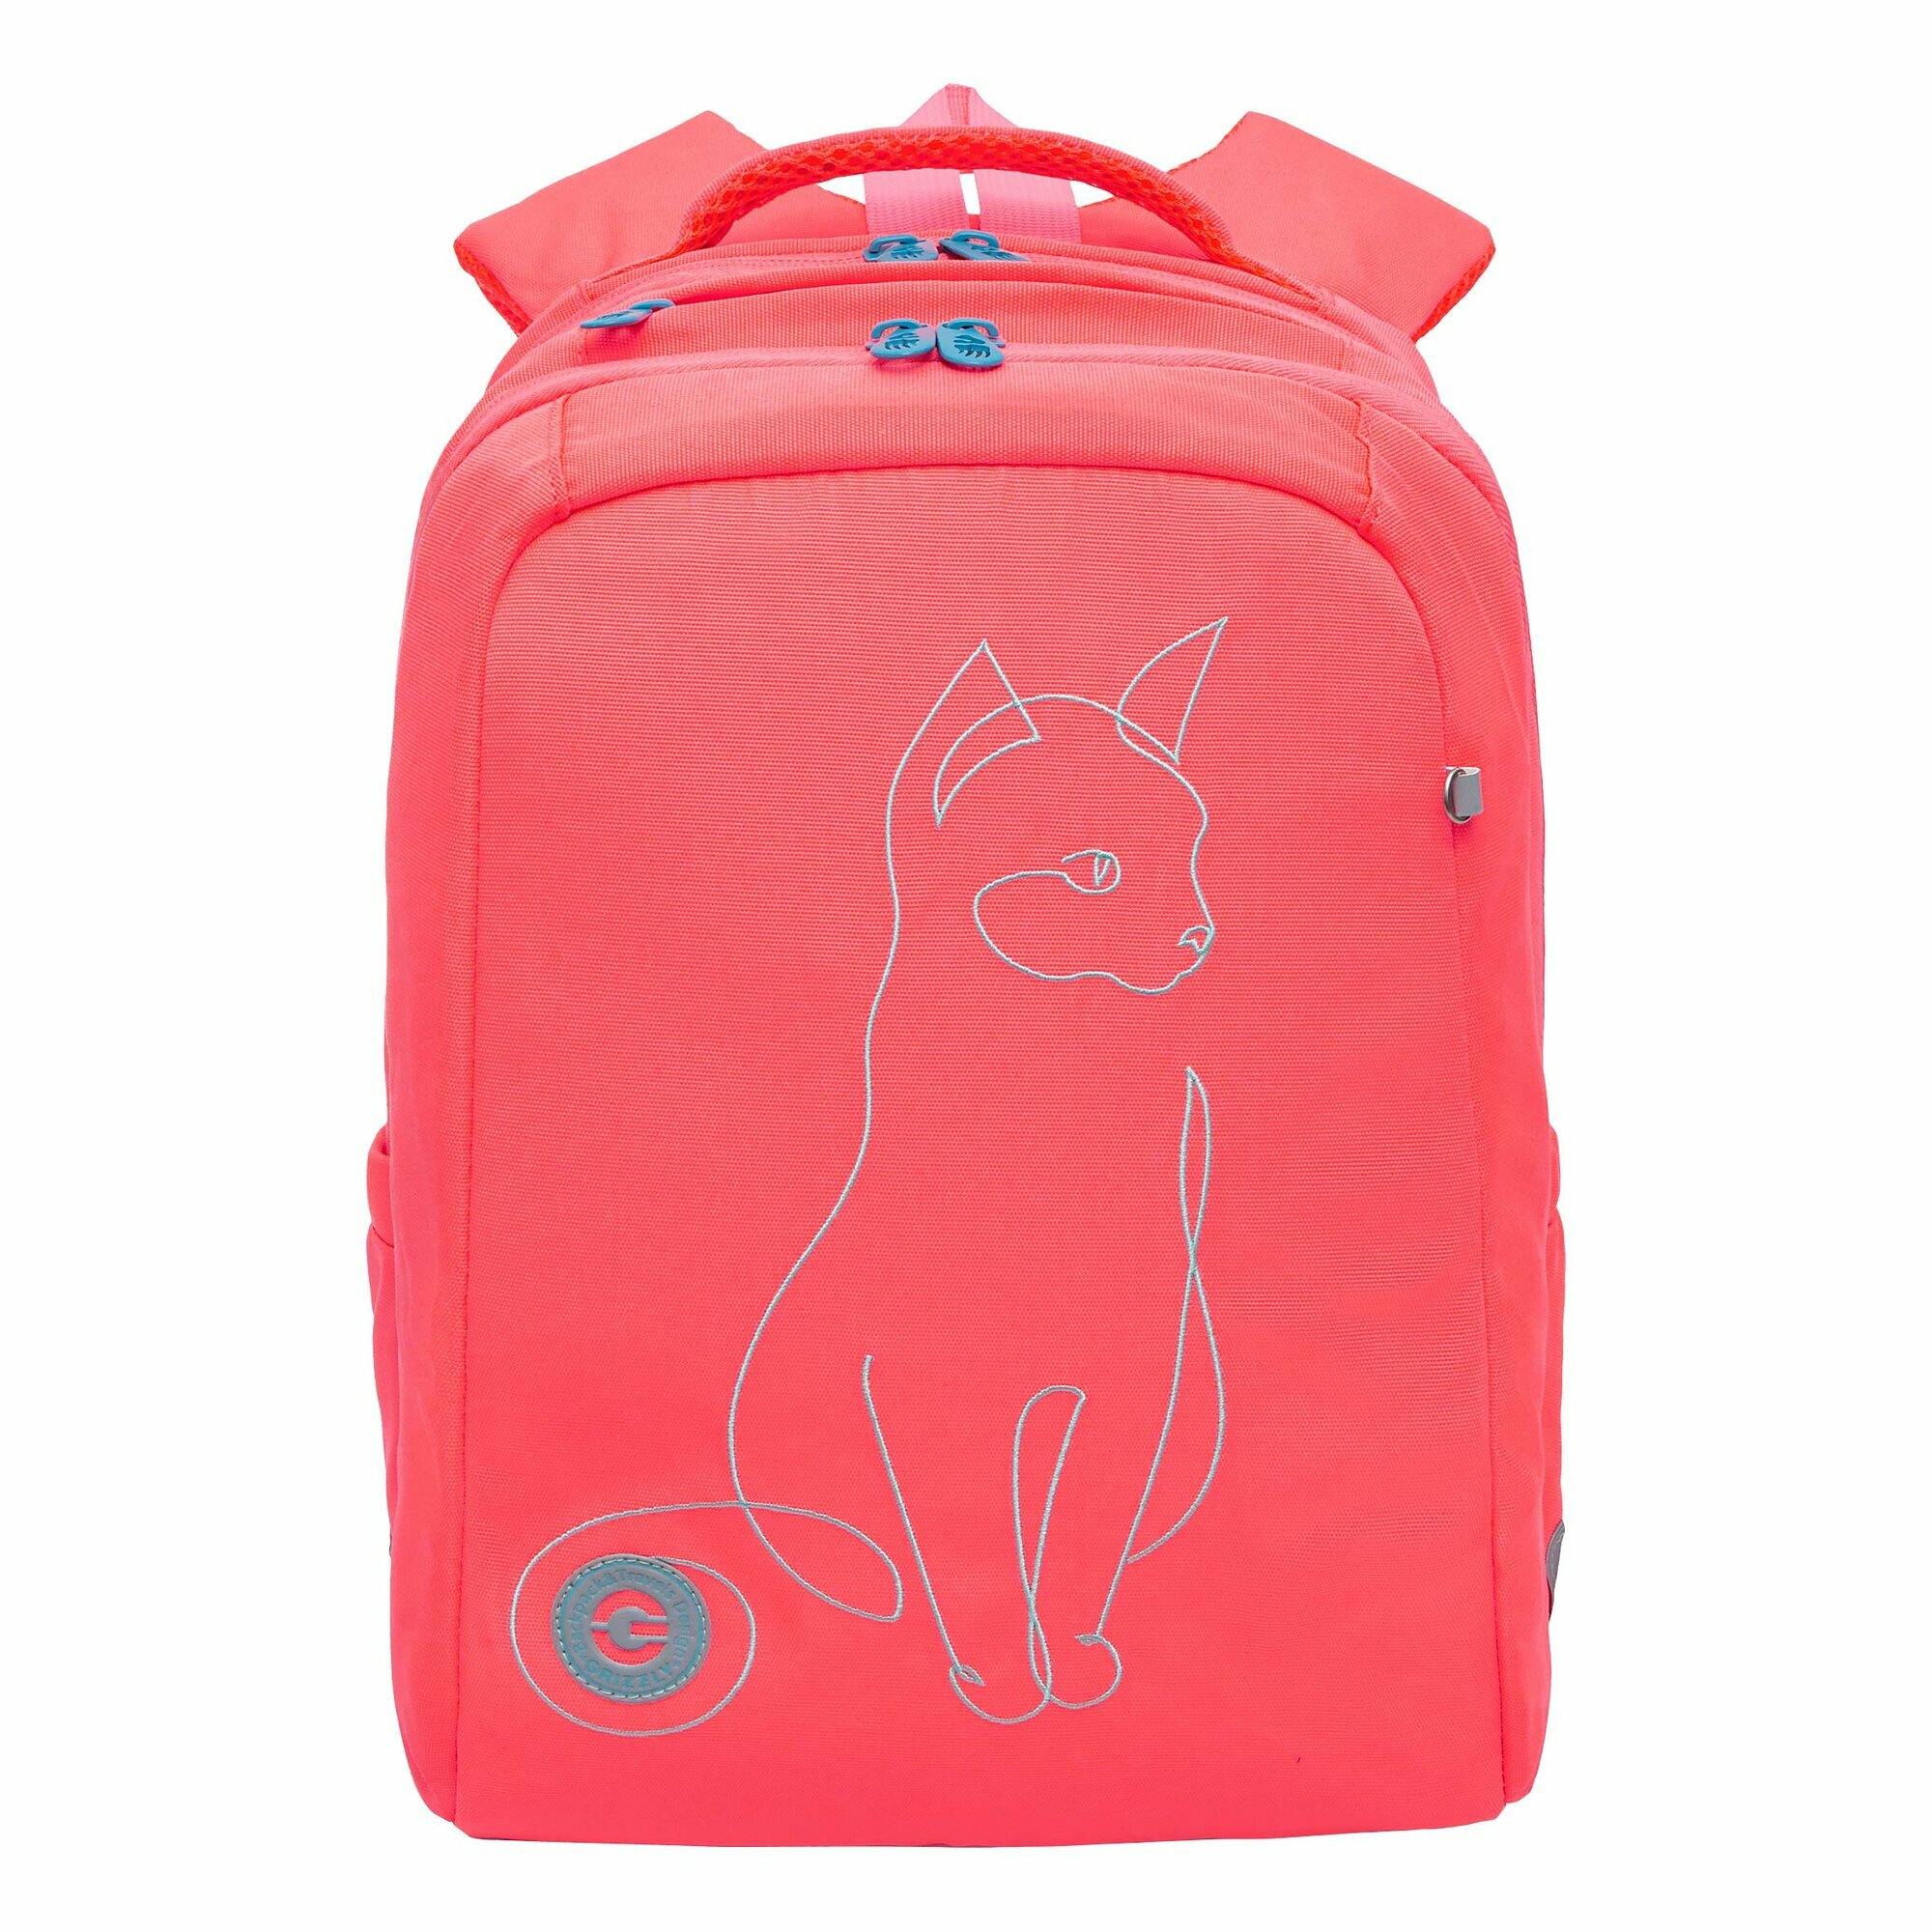 Рюкзак школьный GRIZZLY с карманом для ноутбука 13", двумя отделениями, анатомической спинкой, для девочки RG-366-2/3